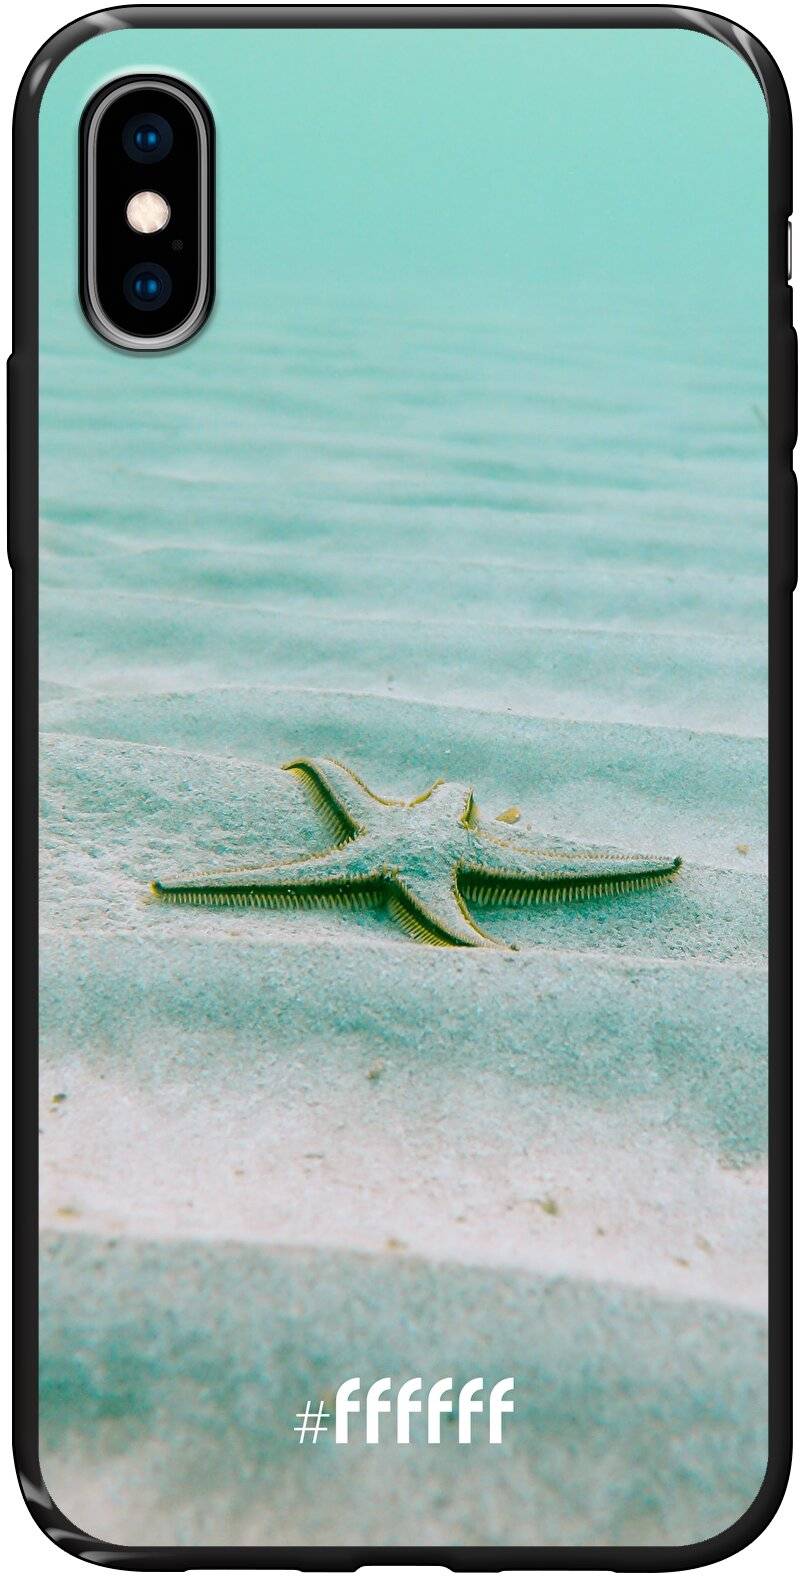 Sea Star iPhone Xs